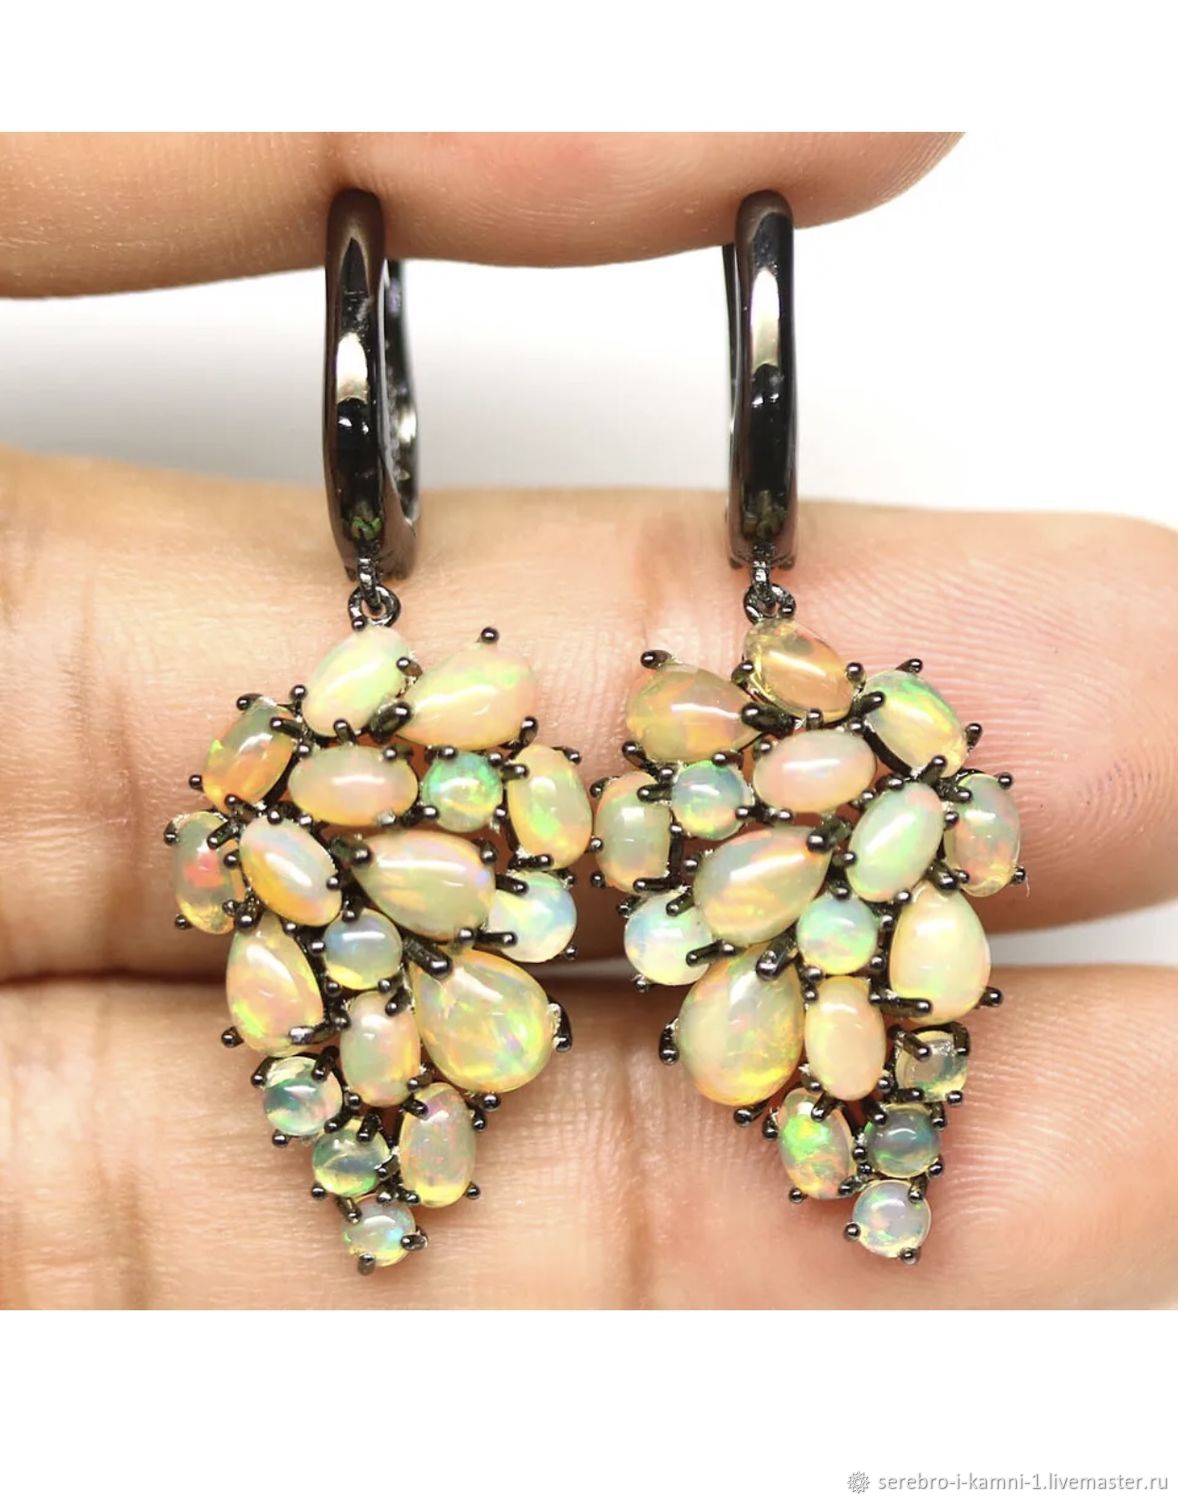 Earrings with fire opals, Earrings, Moscow,  Фото №1